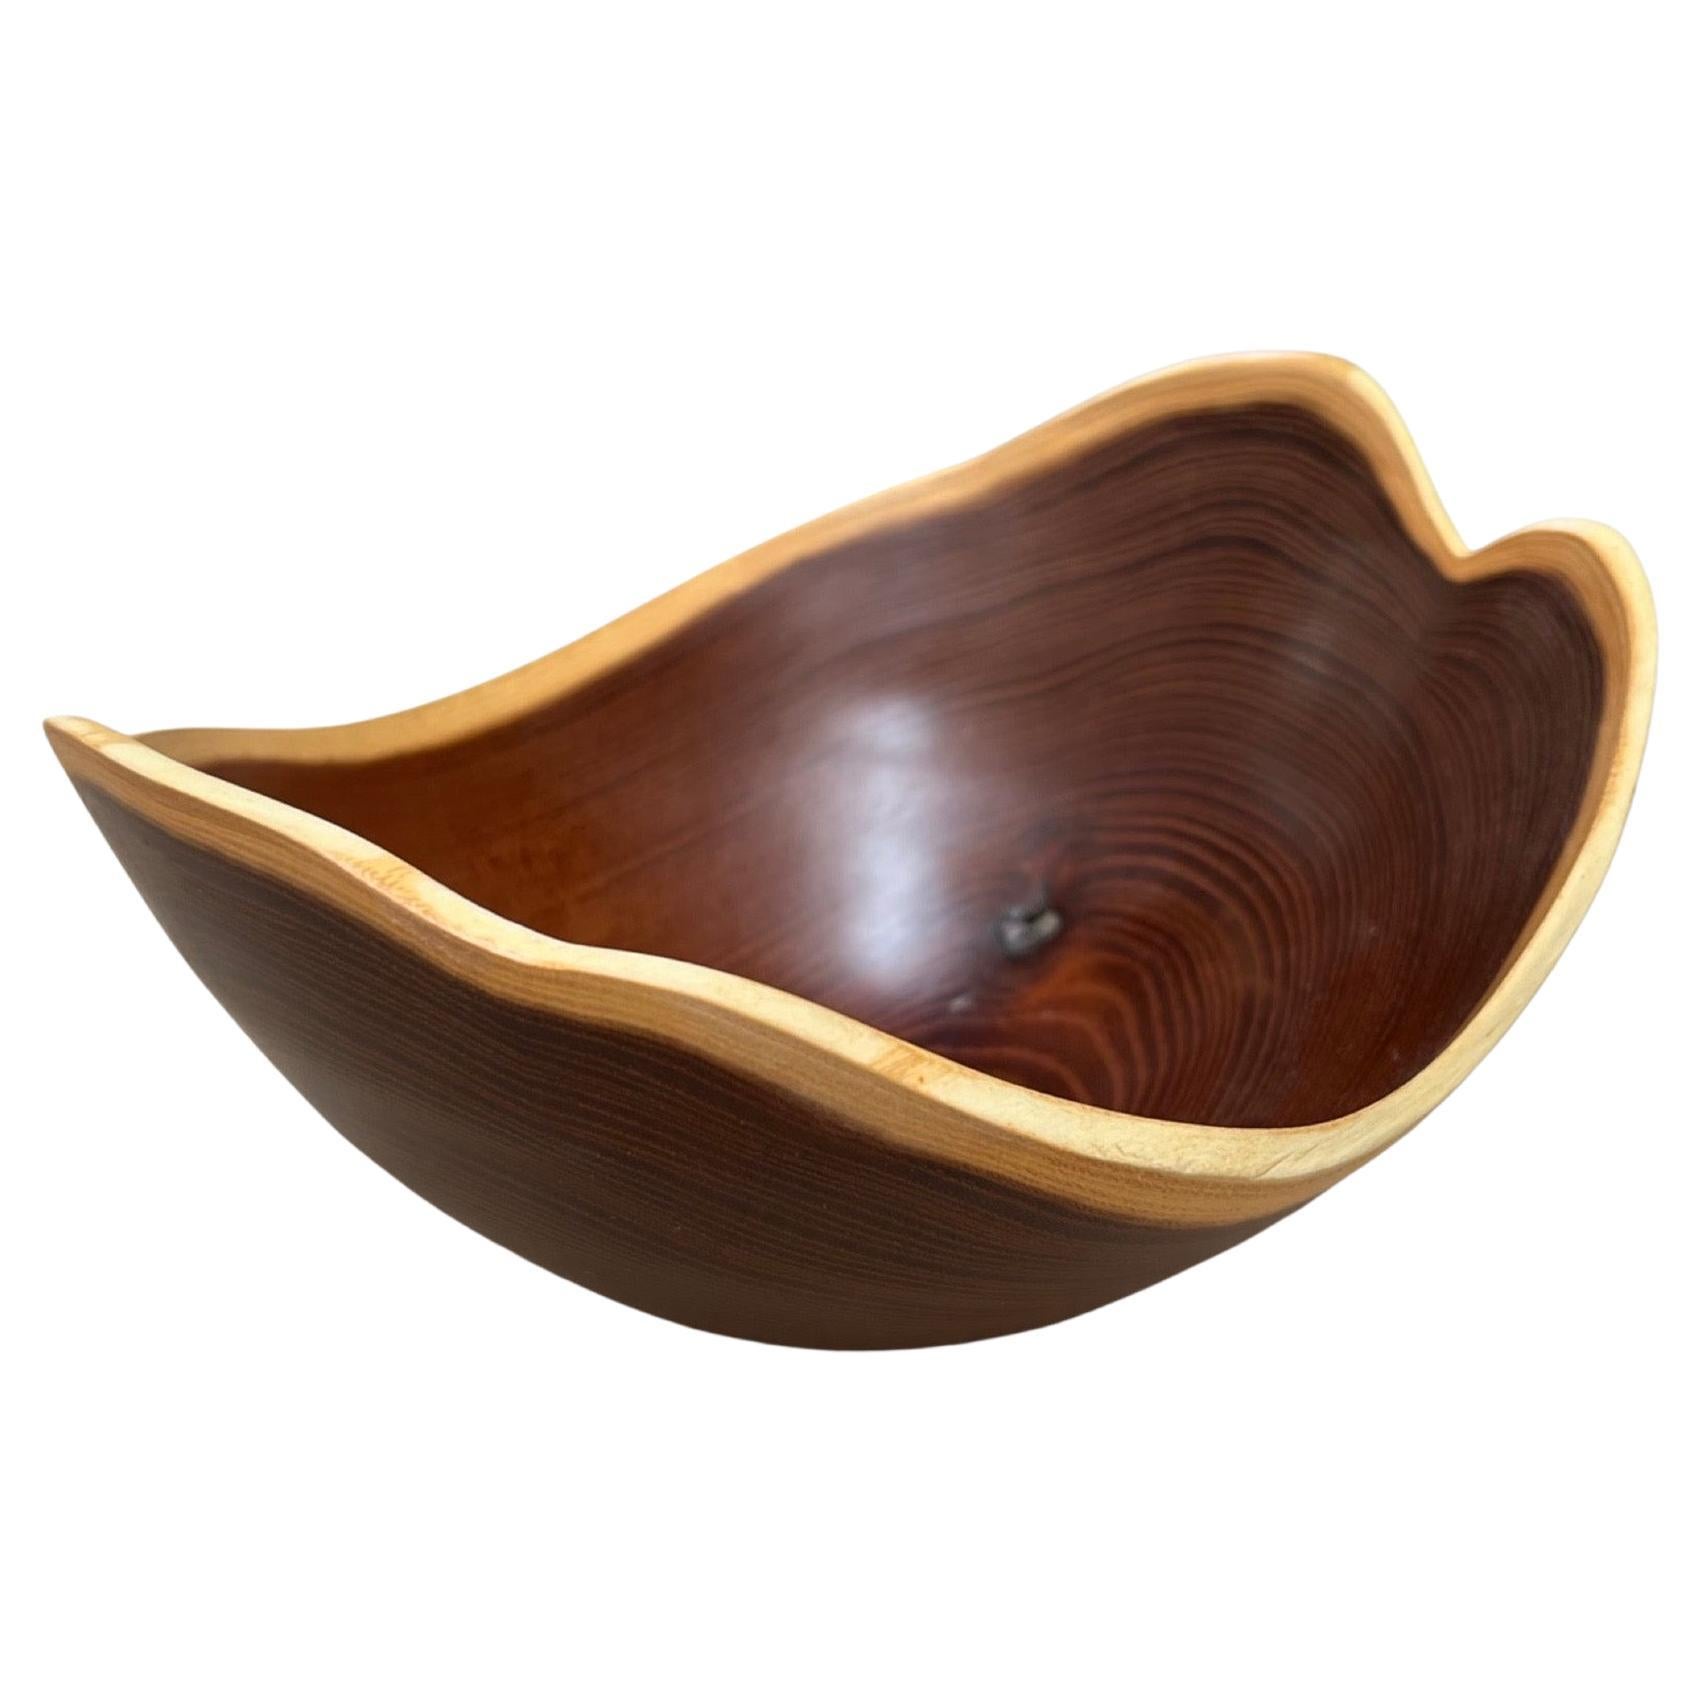 William Rubenstein (1940-2016) signed sculptural Osage orange wood bowl. Marked 